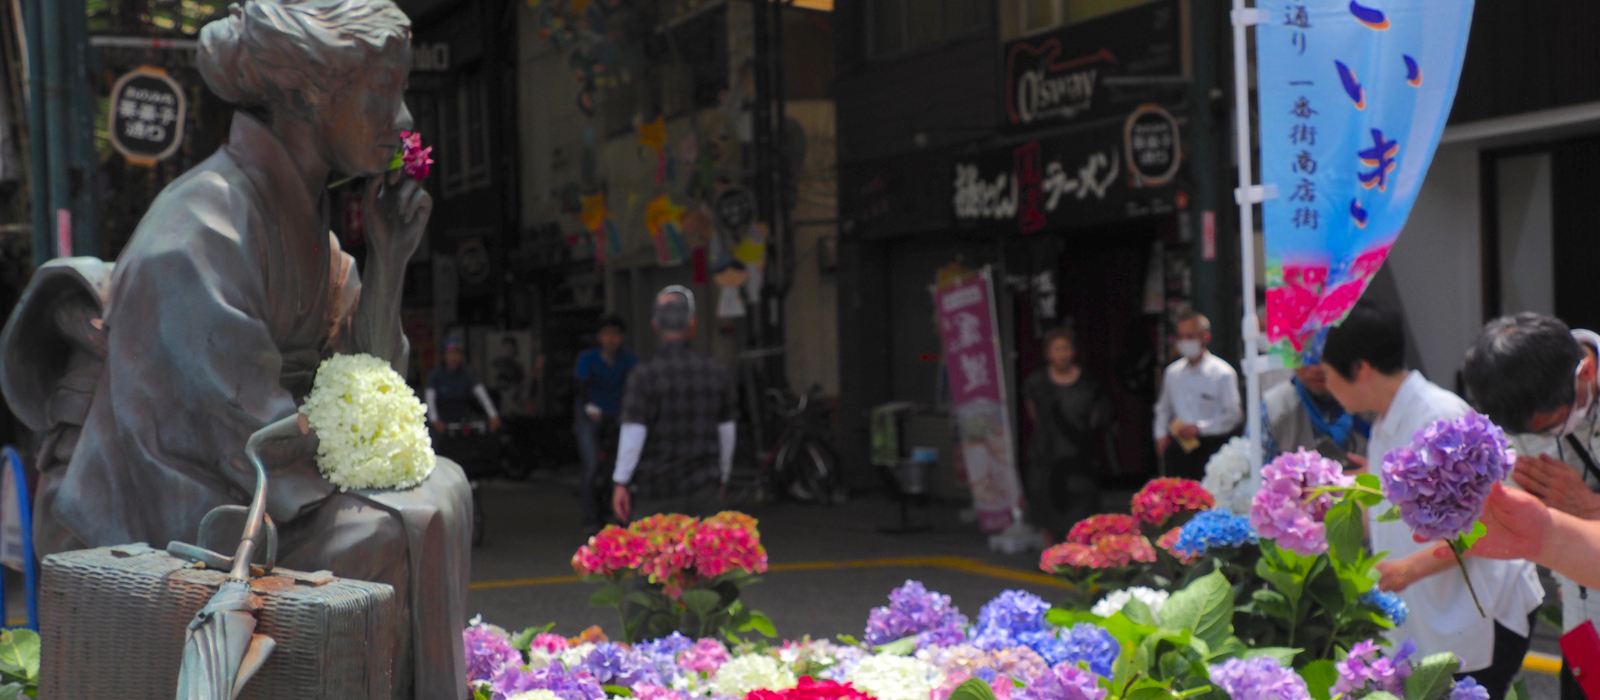 尾道ゆかりの女流作家、 林芙美子を偲ぶ「あじさいき」。6月23日(日)に、芙美子像前で紫陽花の献花をはじめ、様々な催しがあります。